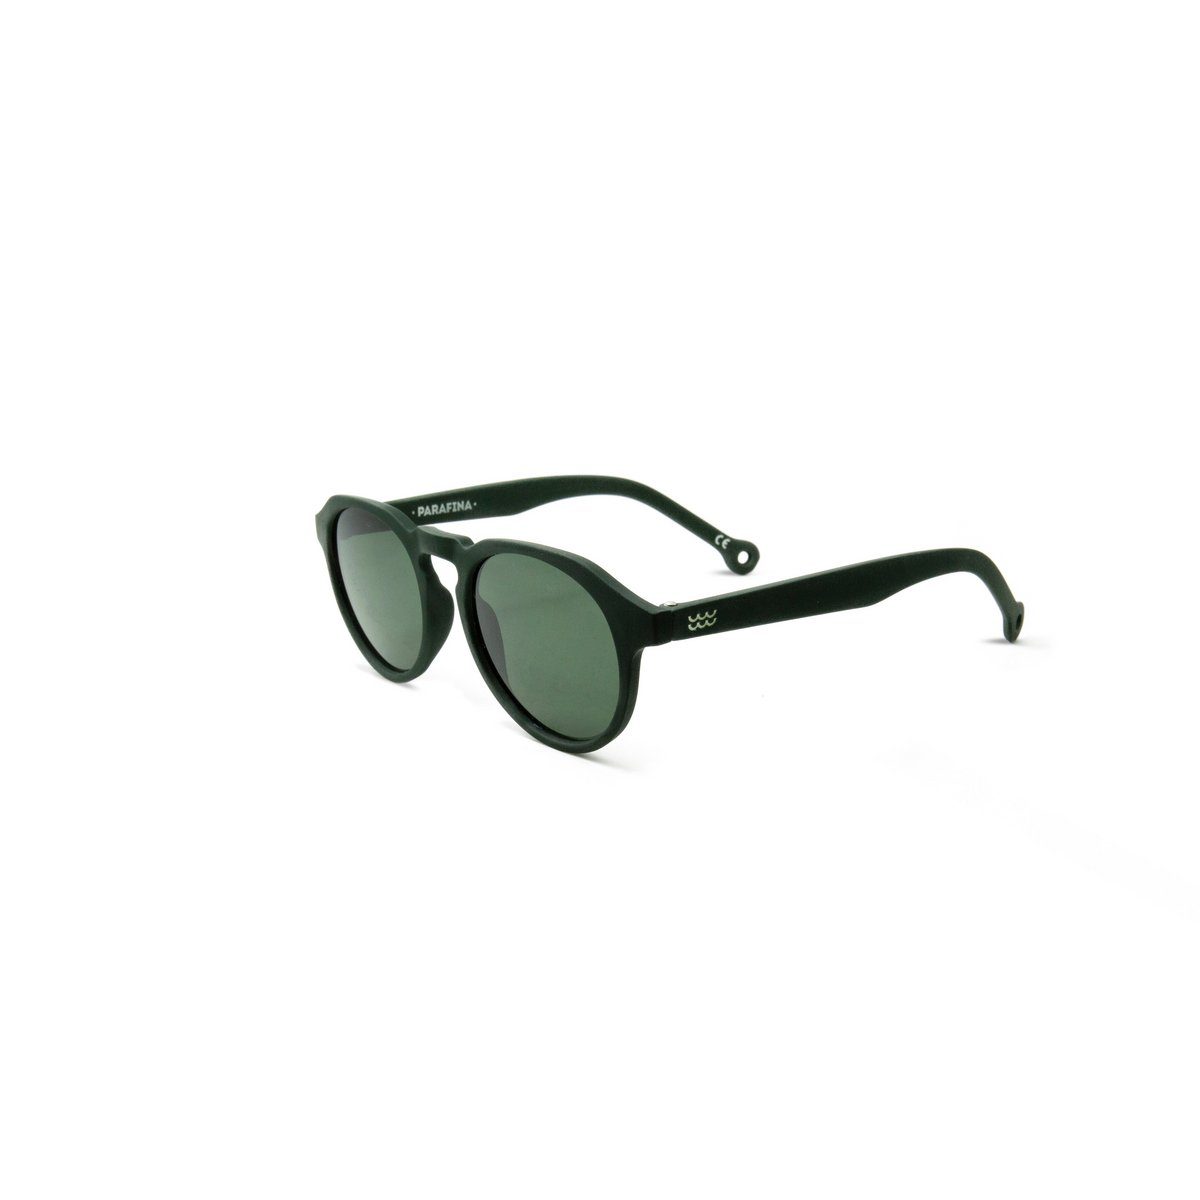 green (1-St) PARAFINA Sonnenbrille grün